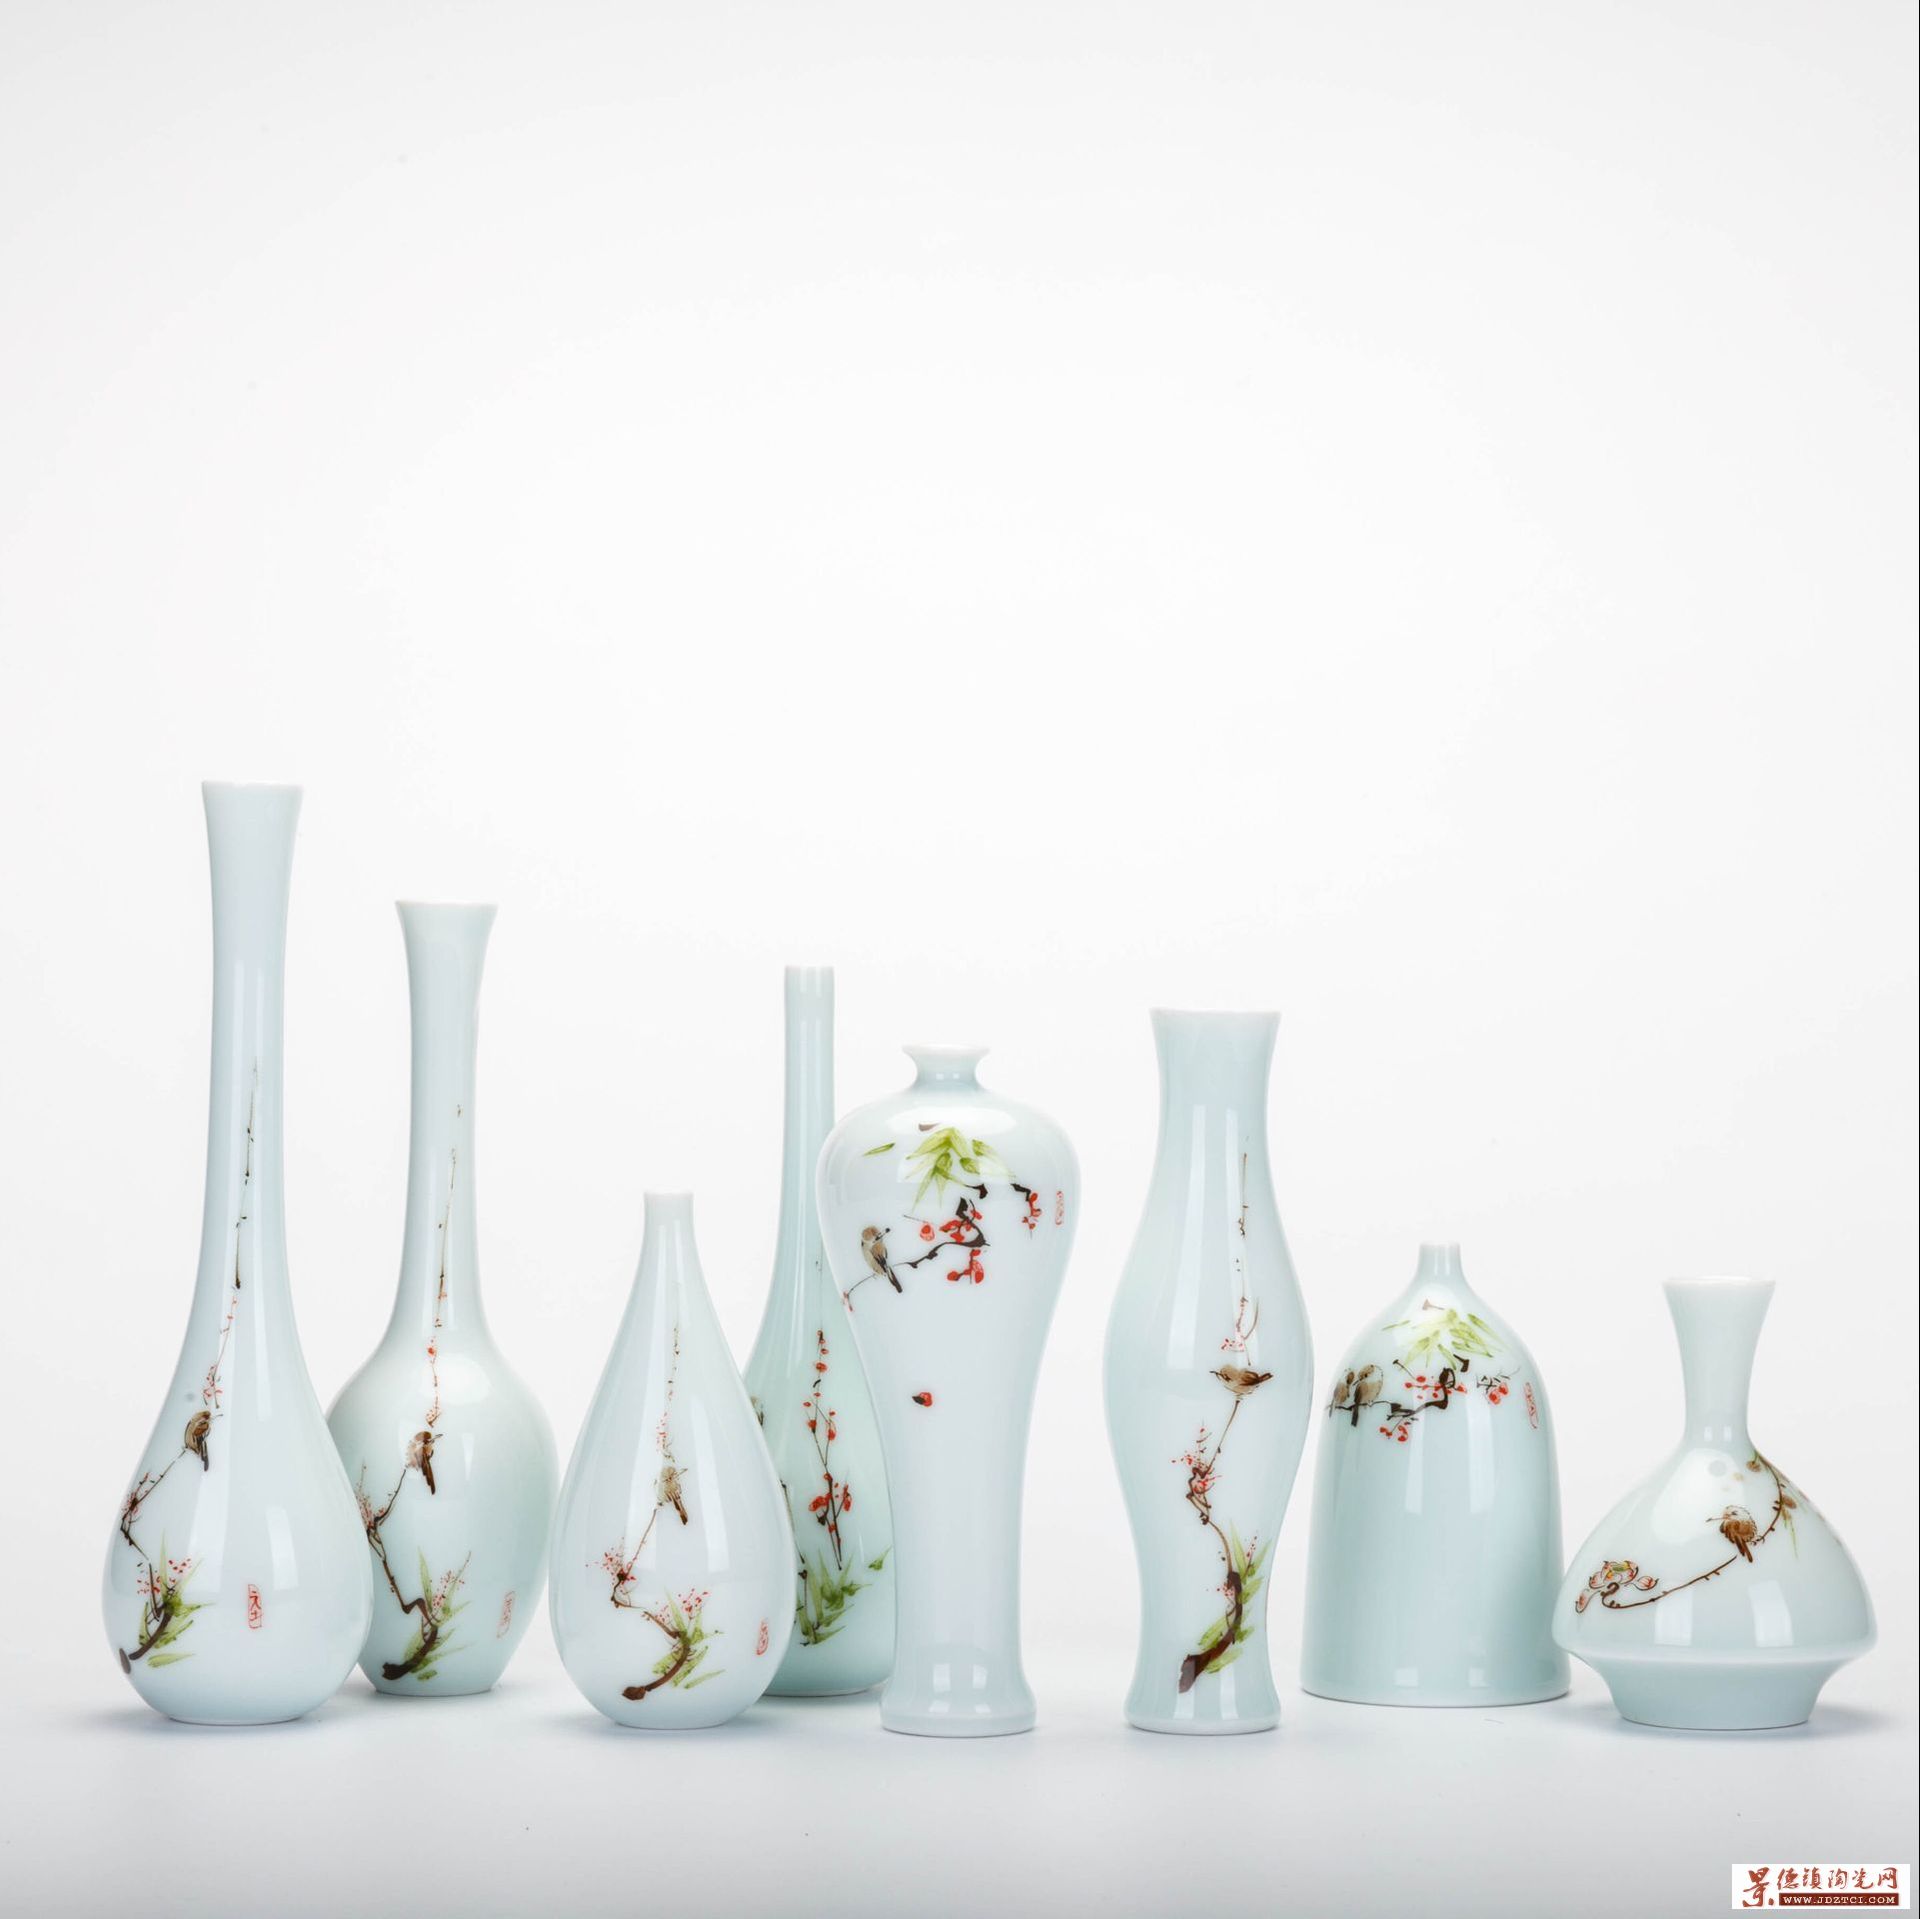 陶瓷迷你陶瓷小花瓶摆件  陶瓷小花瓶水培  陶瓷小花瓶小清新  北欧陶瓷白色小花瓶